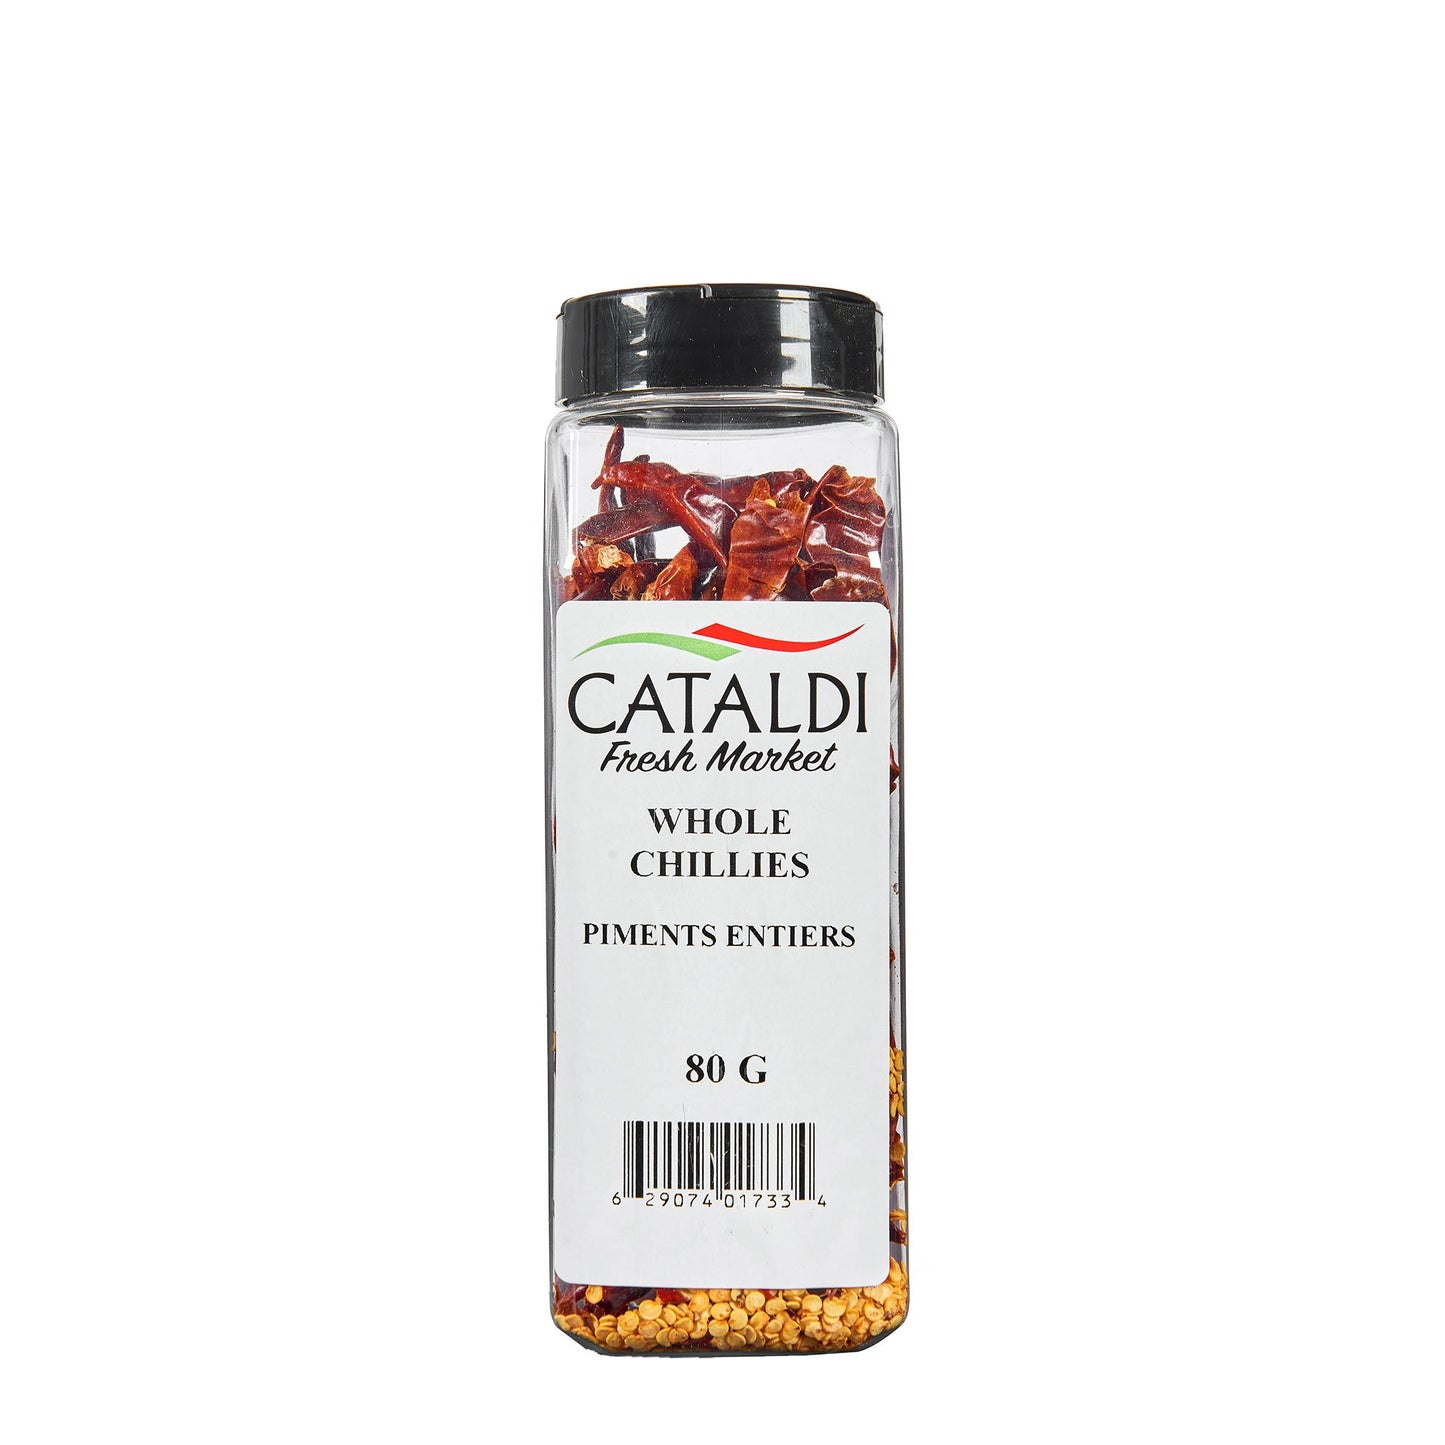 Cataldi Whole Chillies 80G